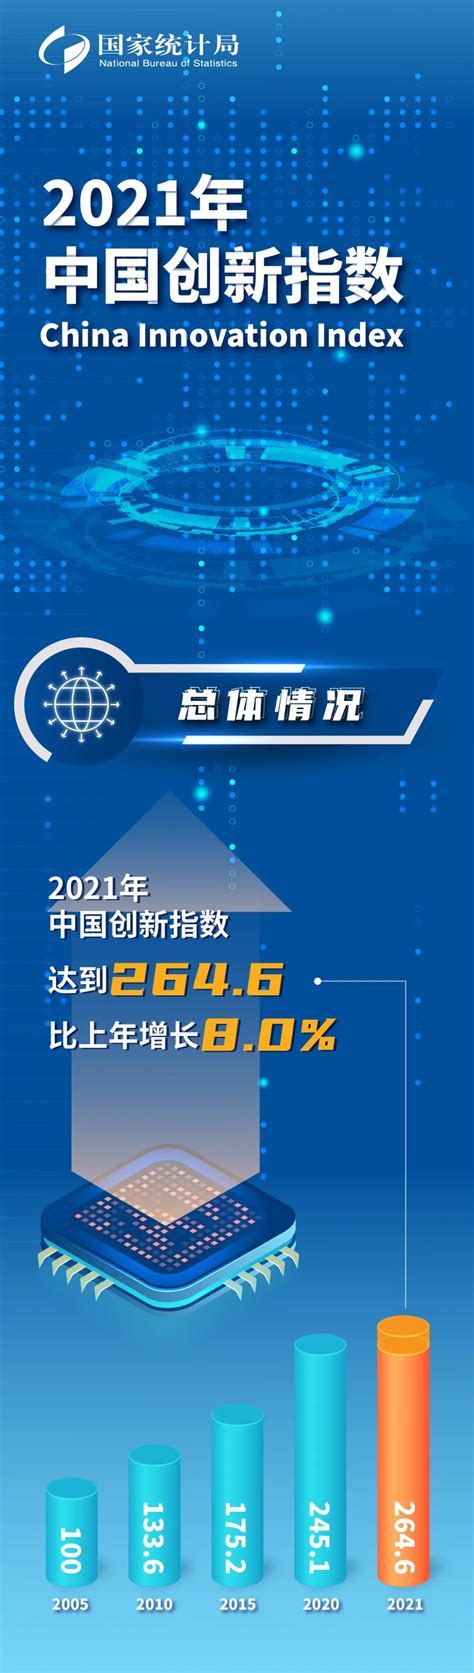 十张图带你了解2022年中国科技创新情况 创新指数排名自2013年起连续9年稳步上升 - 维科号